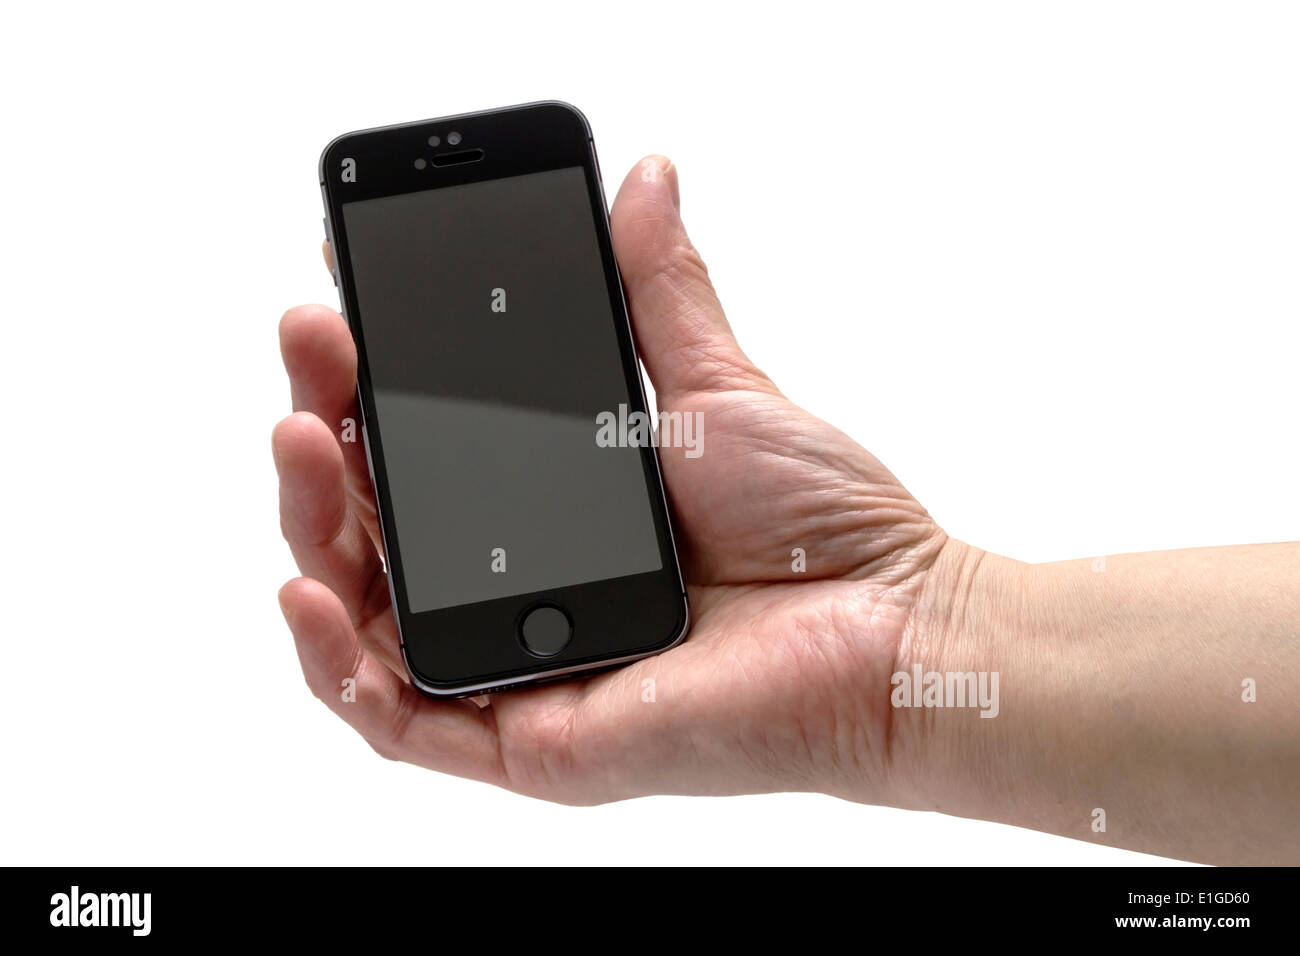 Un iPhone 5S sobre un fondo blanco, mostrando la app Whatsapp mostrar  instrucciones para iniciar una nueva sesión de chat Fotografía de stock -  Alamy